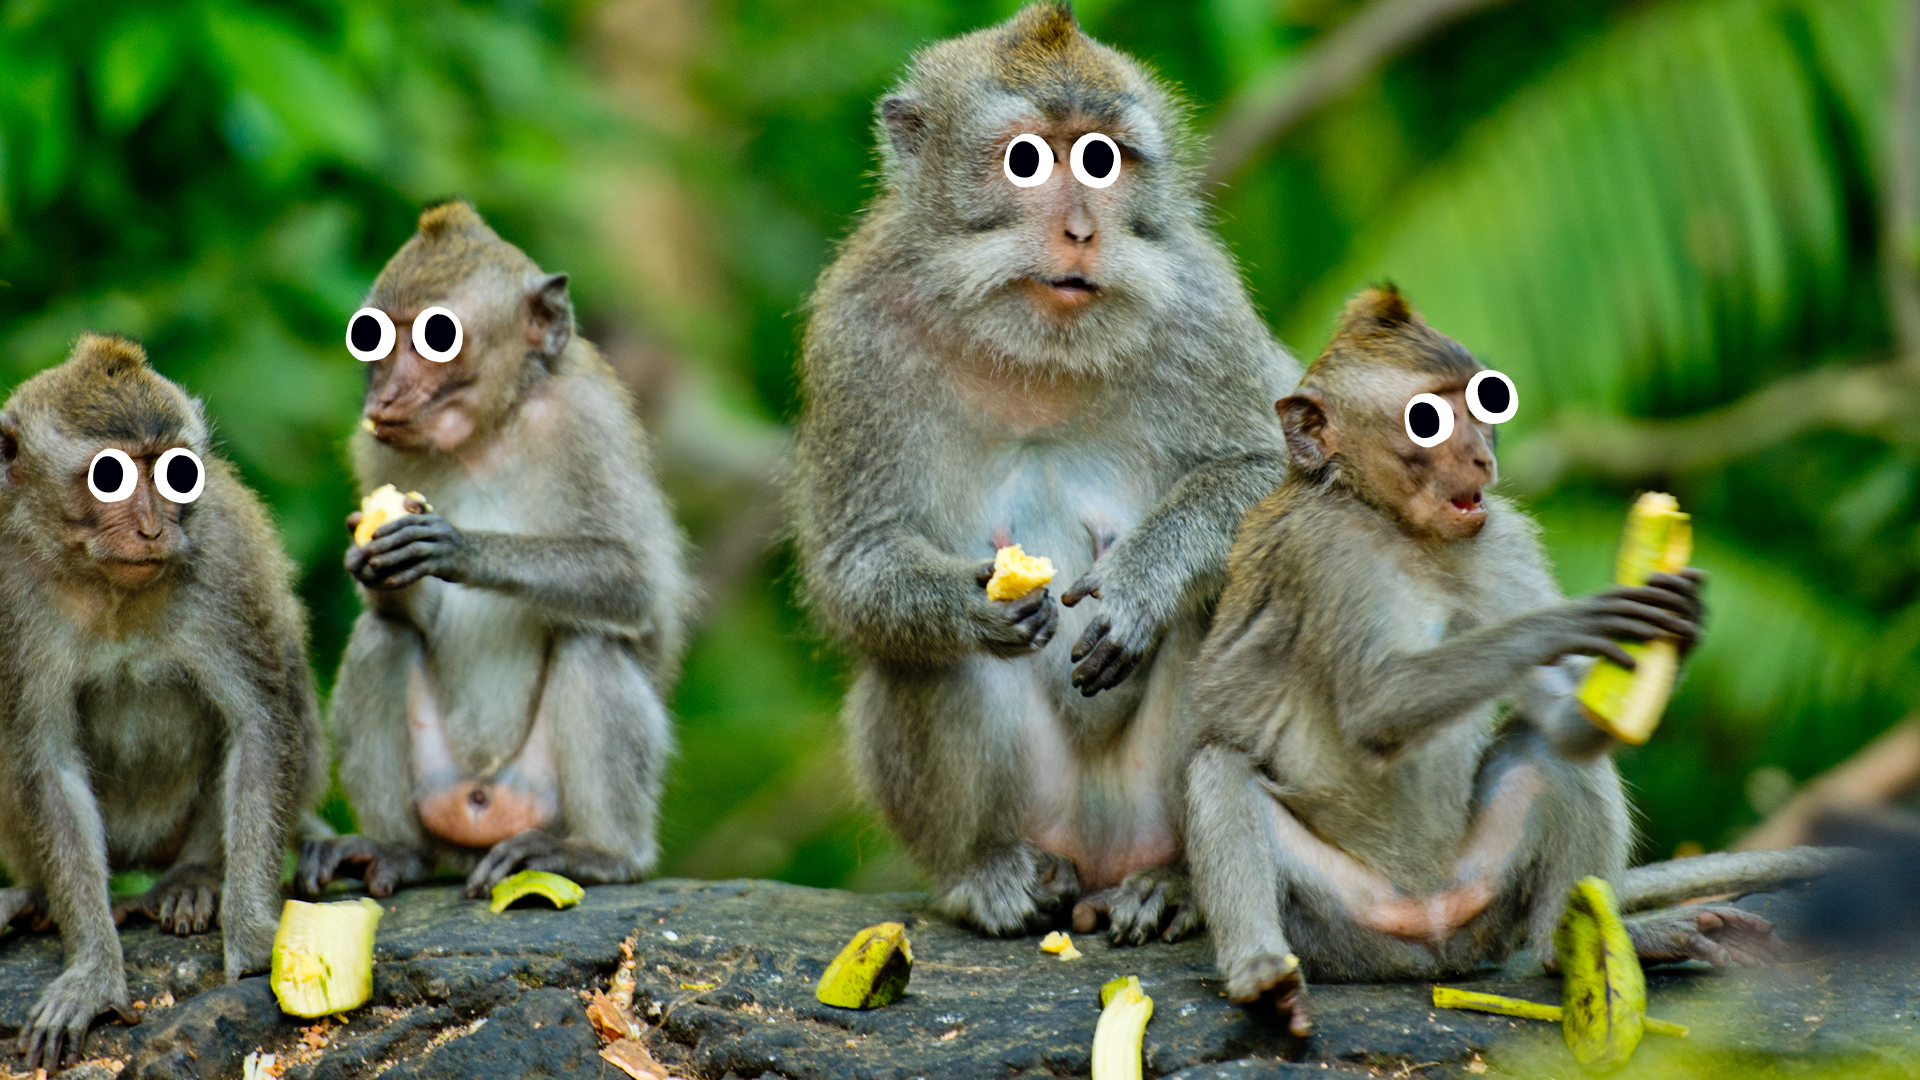 Some goofy monkeys